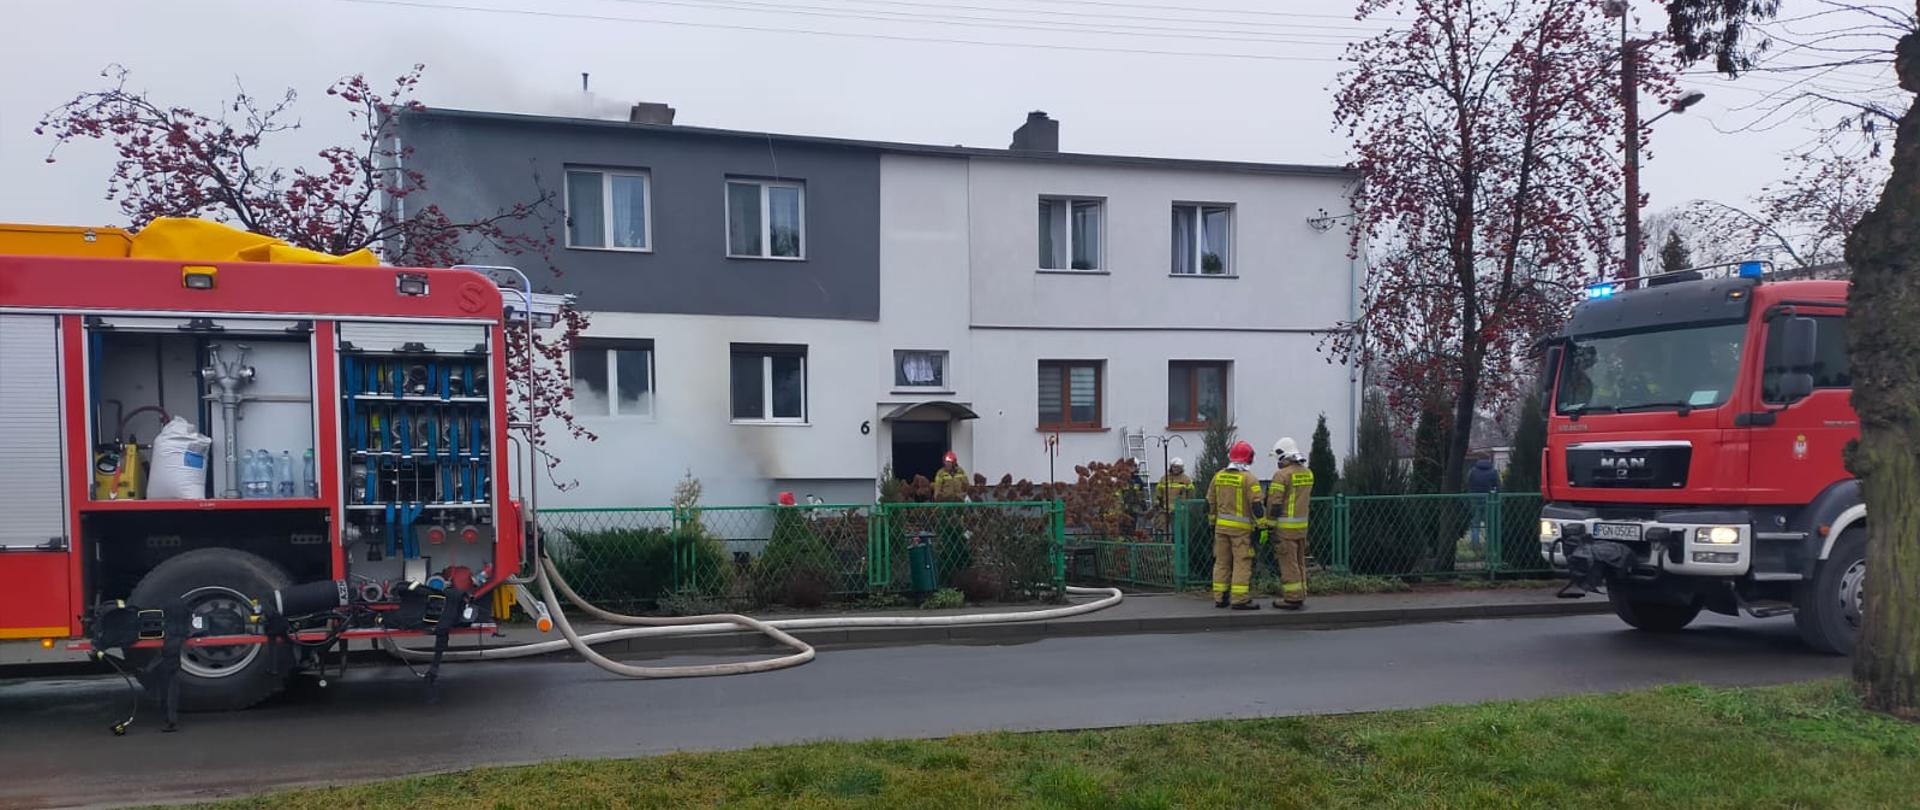 Na zdjęciu widać dwa samochody pożarnicze oraz strażaków. W tle widać dom wielorodzinny w którym powstał pożar